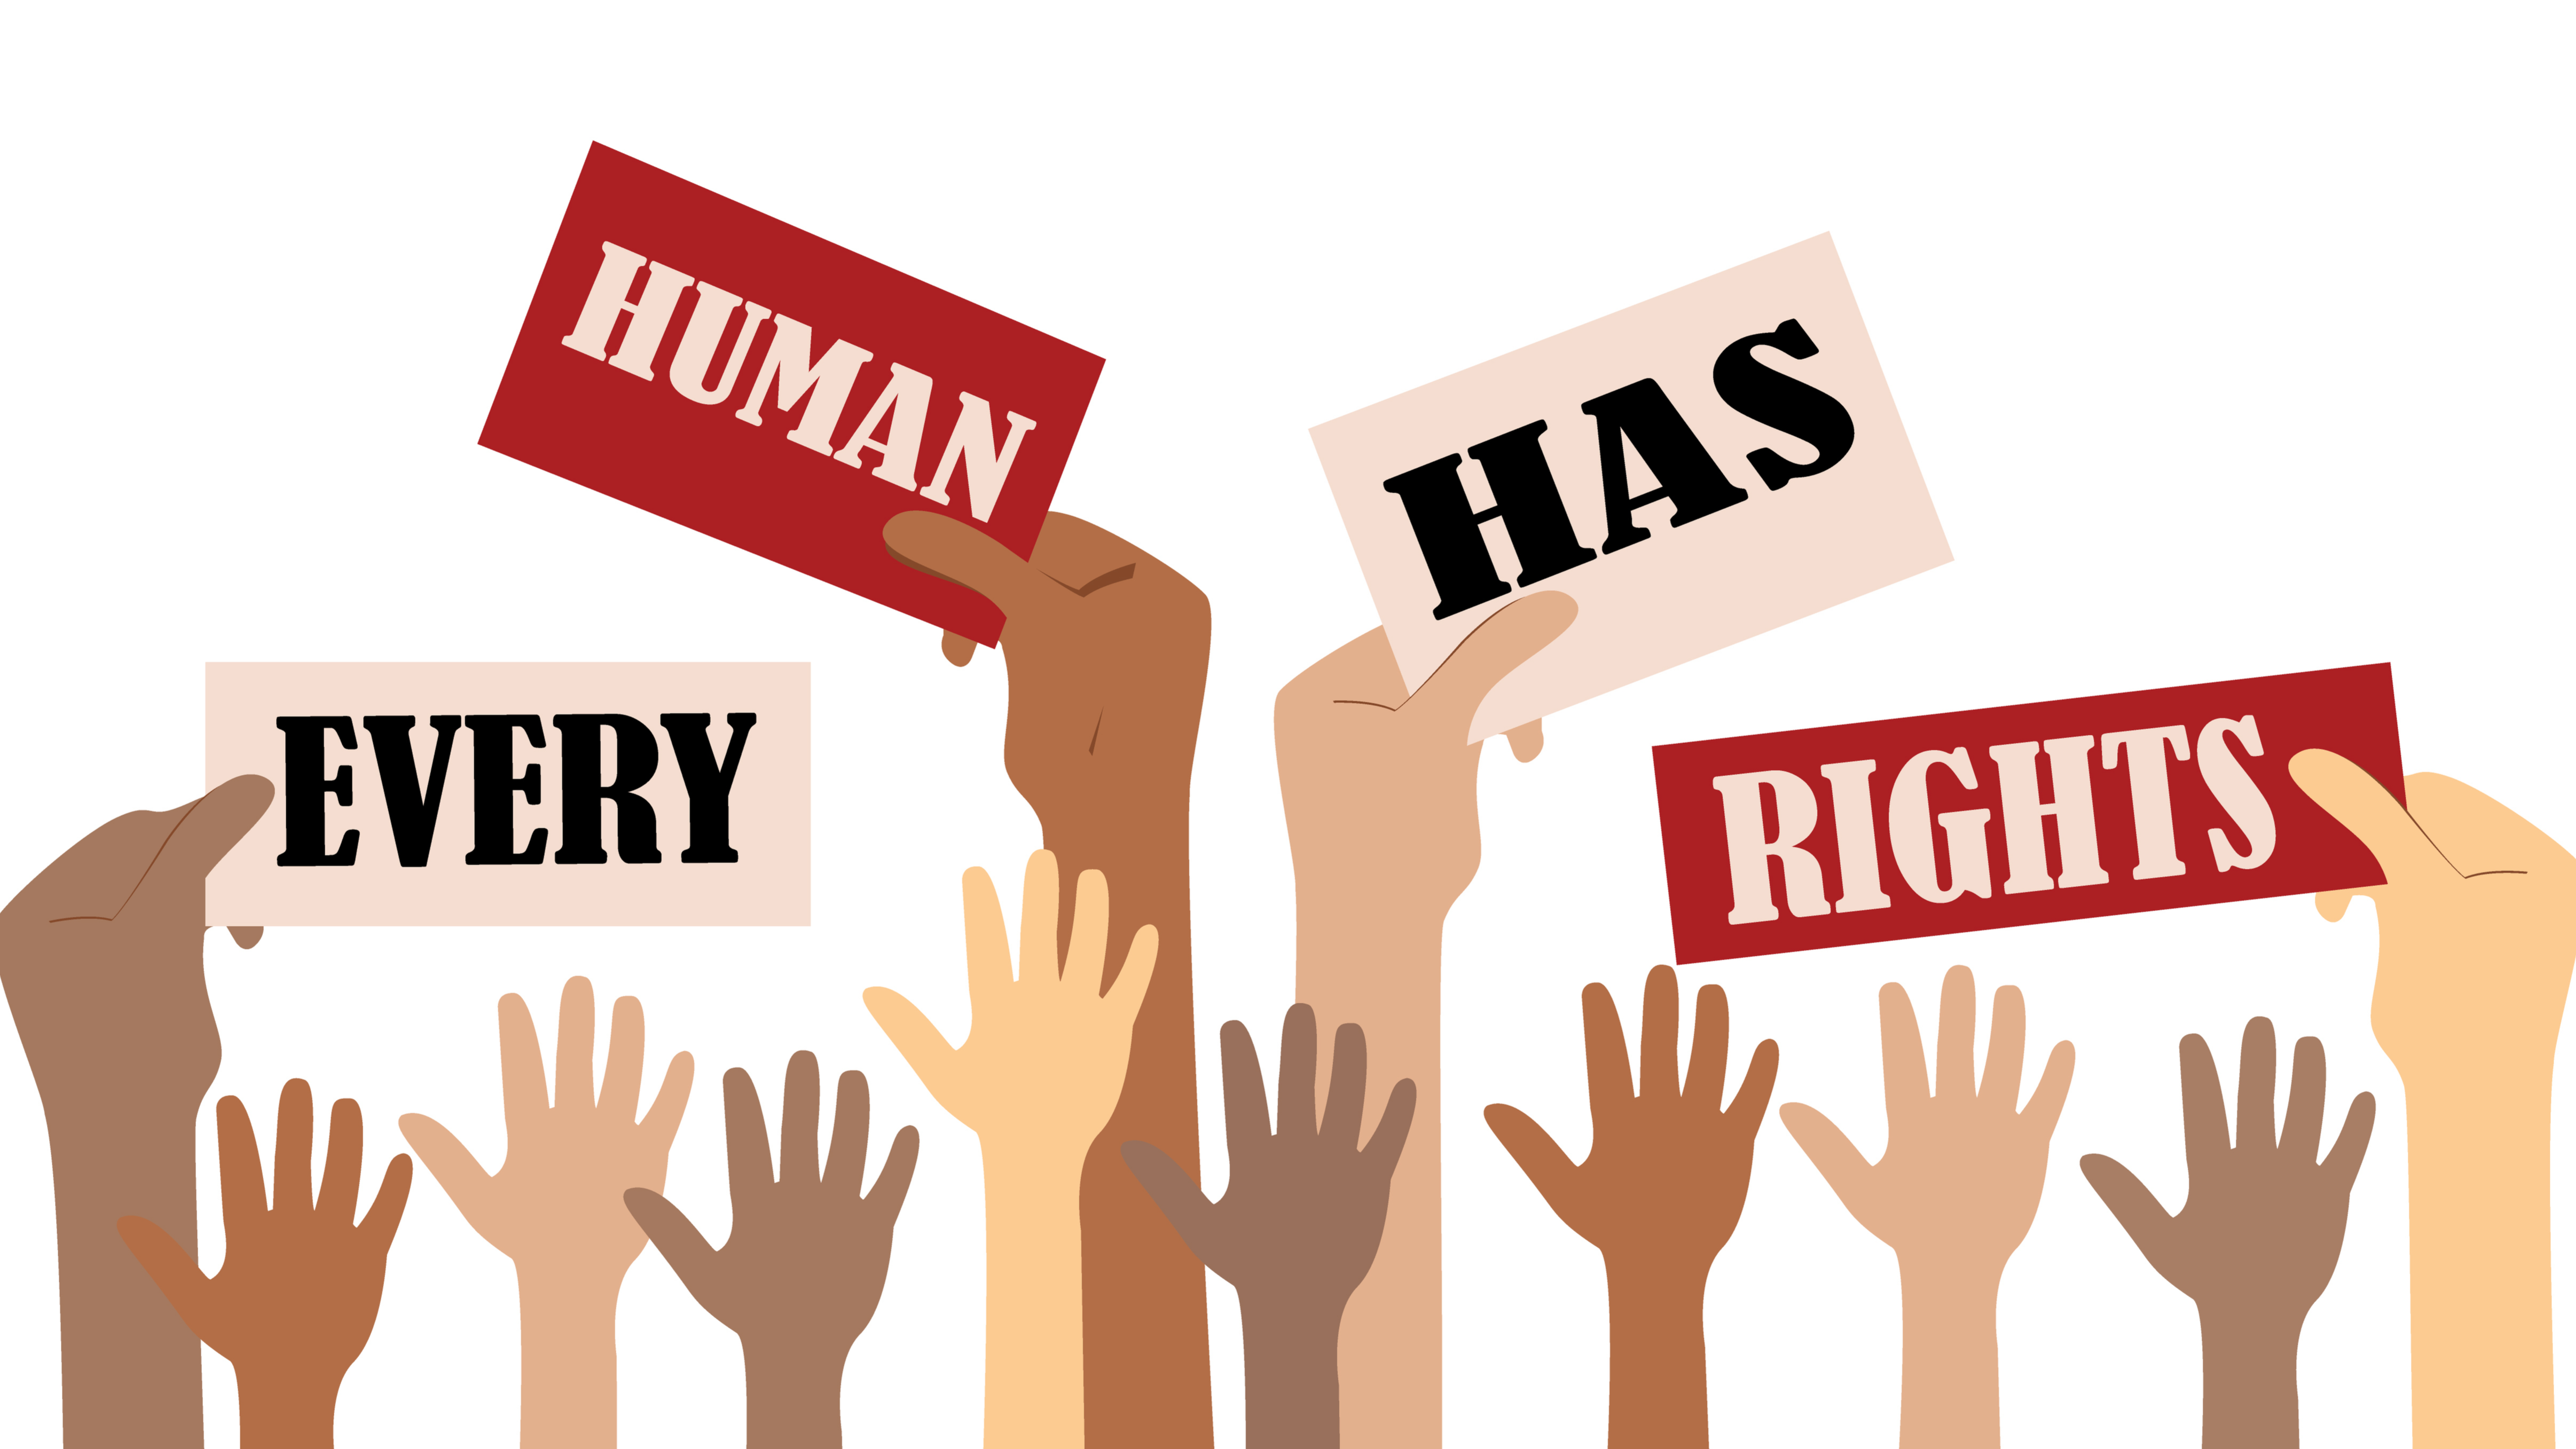 human rights là gì